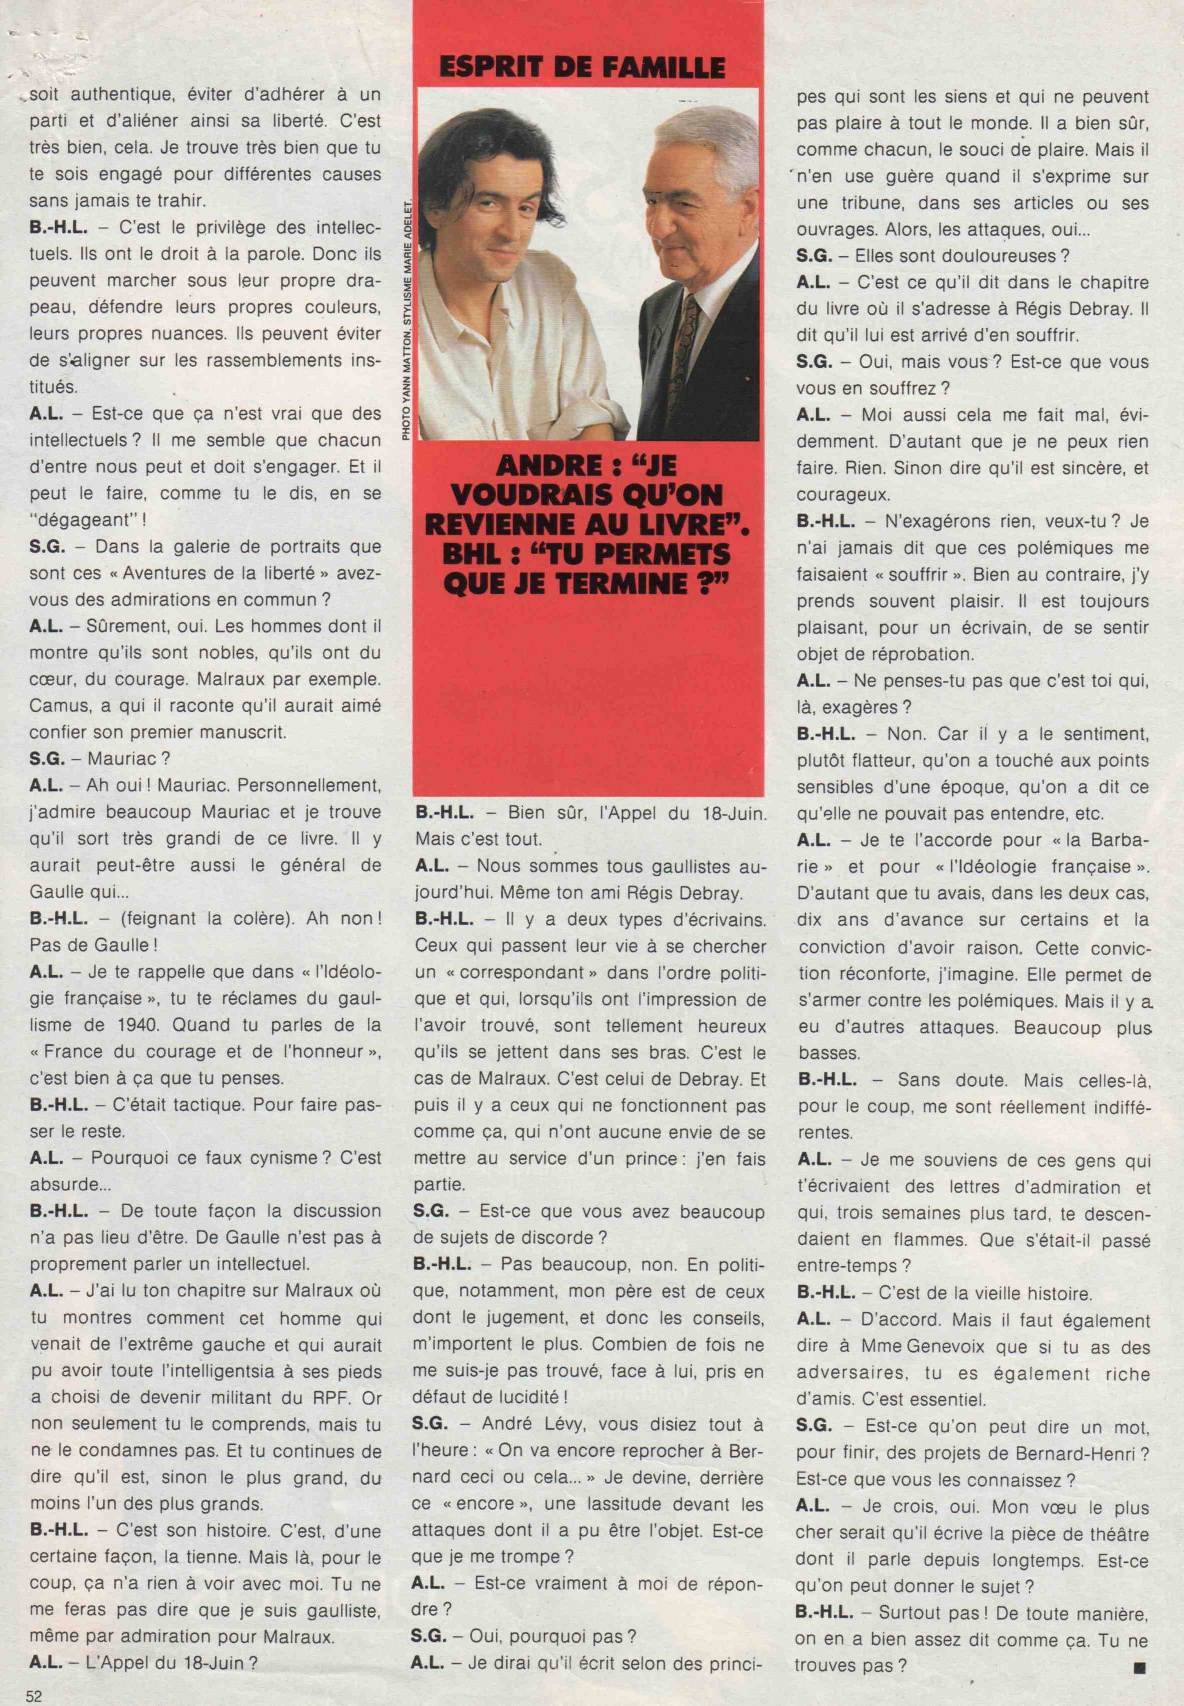 Entretient entre BHL et son père, André Lévy, dans "Madame Figaro", le 9 mars 1991.